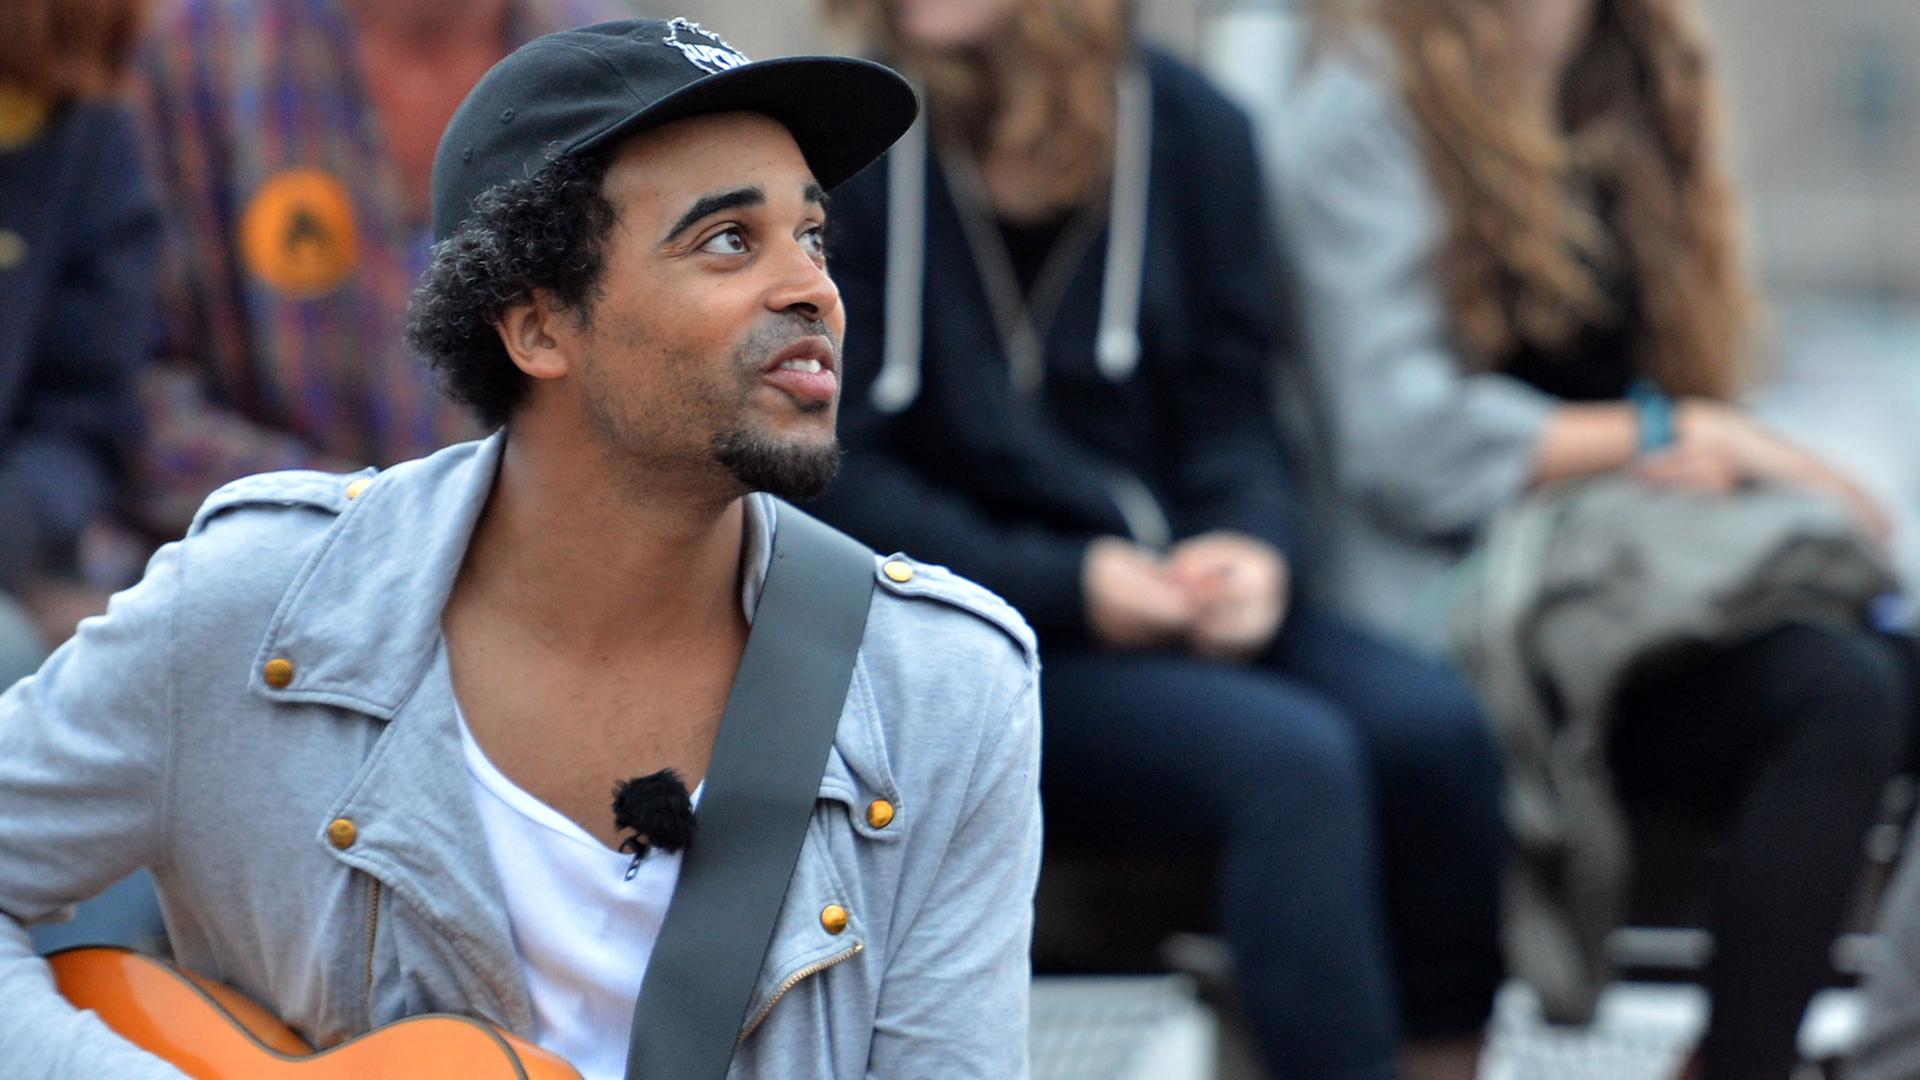 Patrice sitzt umgeben von Fans auf dem Badeschiff in Berlin. Er hält eine Gitarre in der Hand.